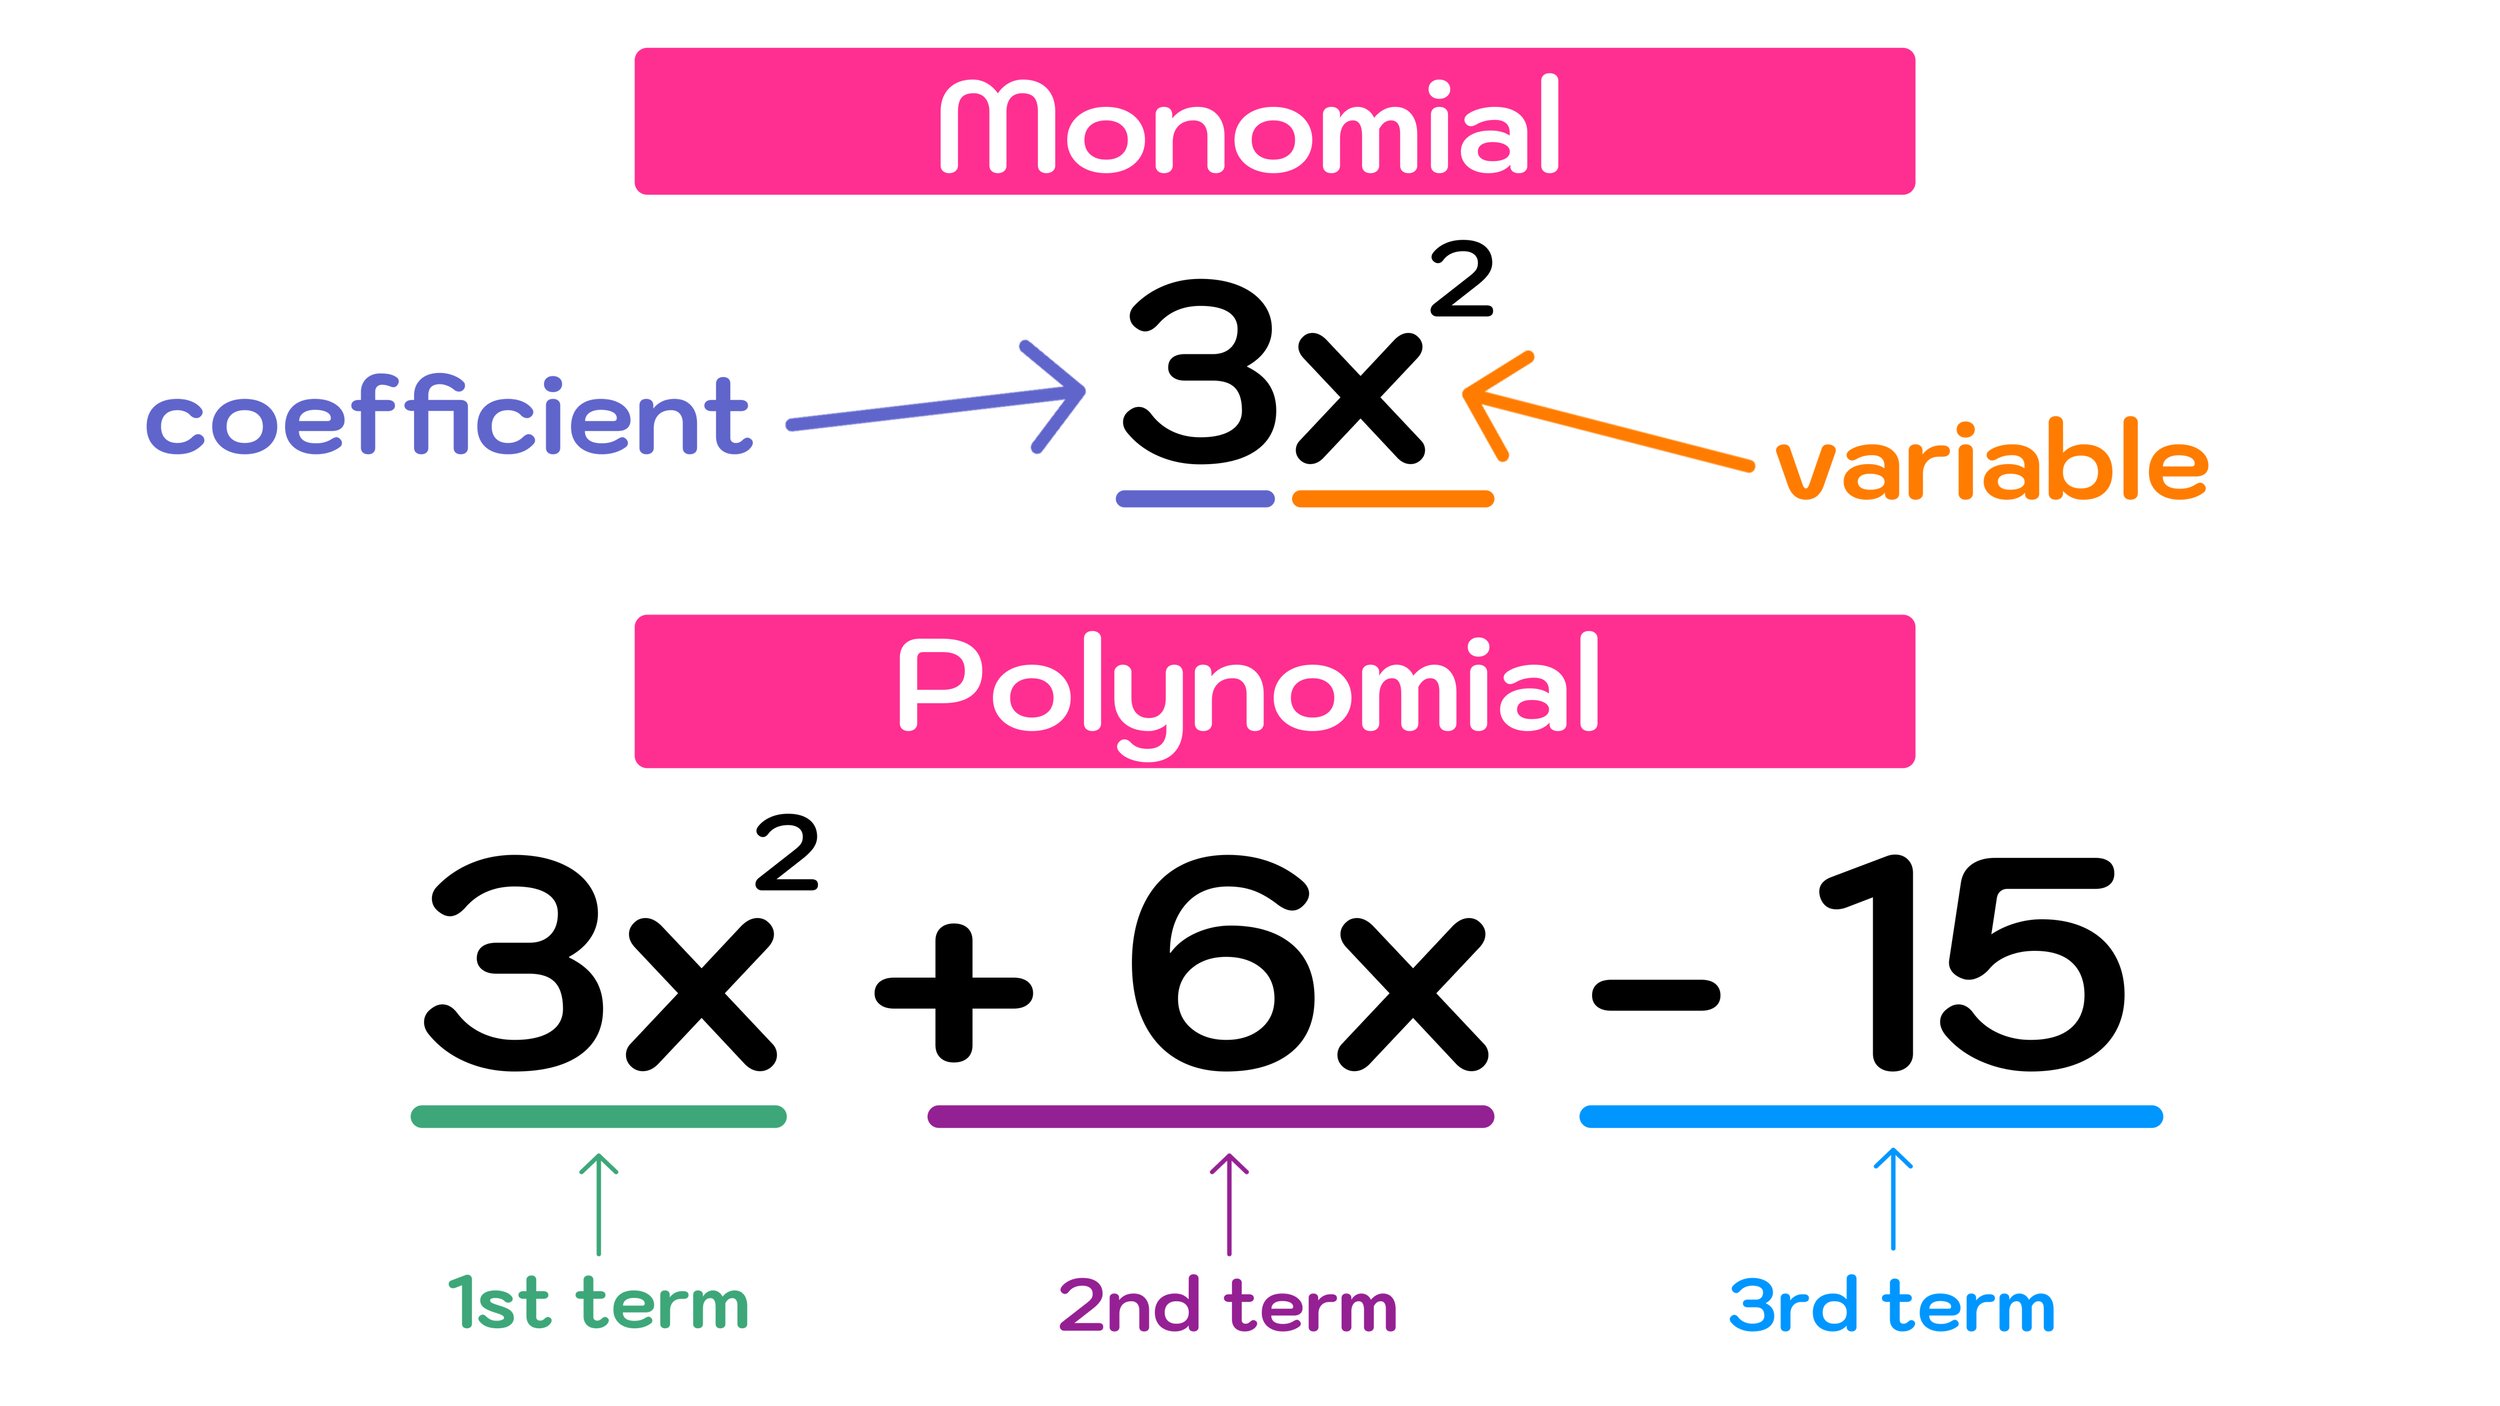 factoring polynomials problem solving